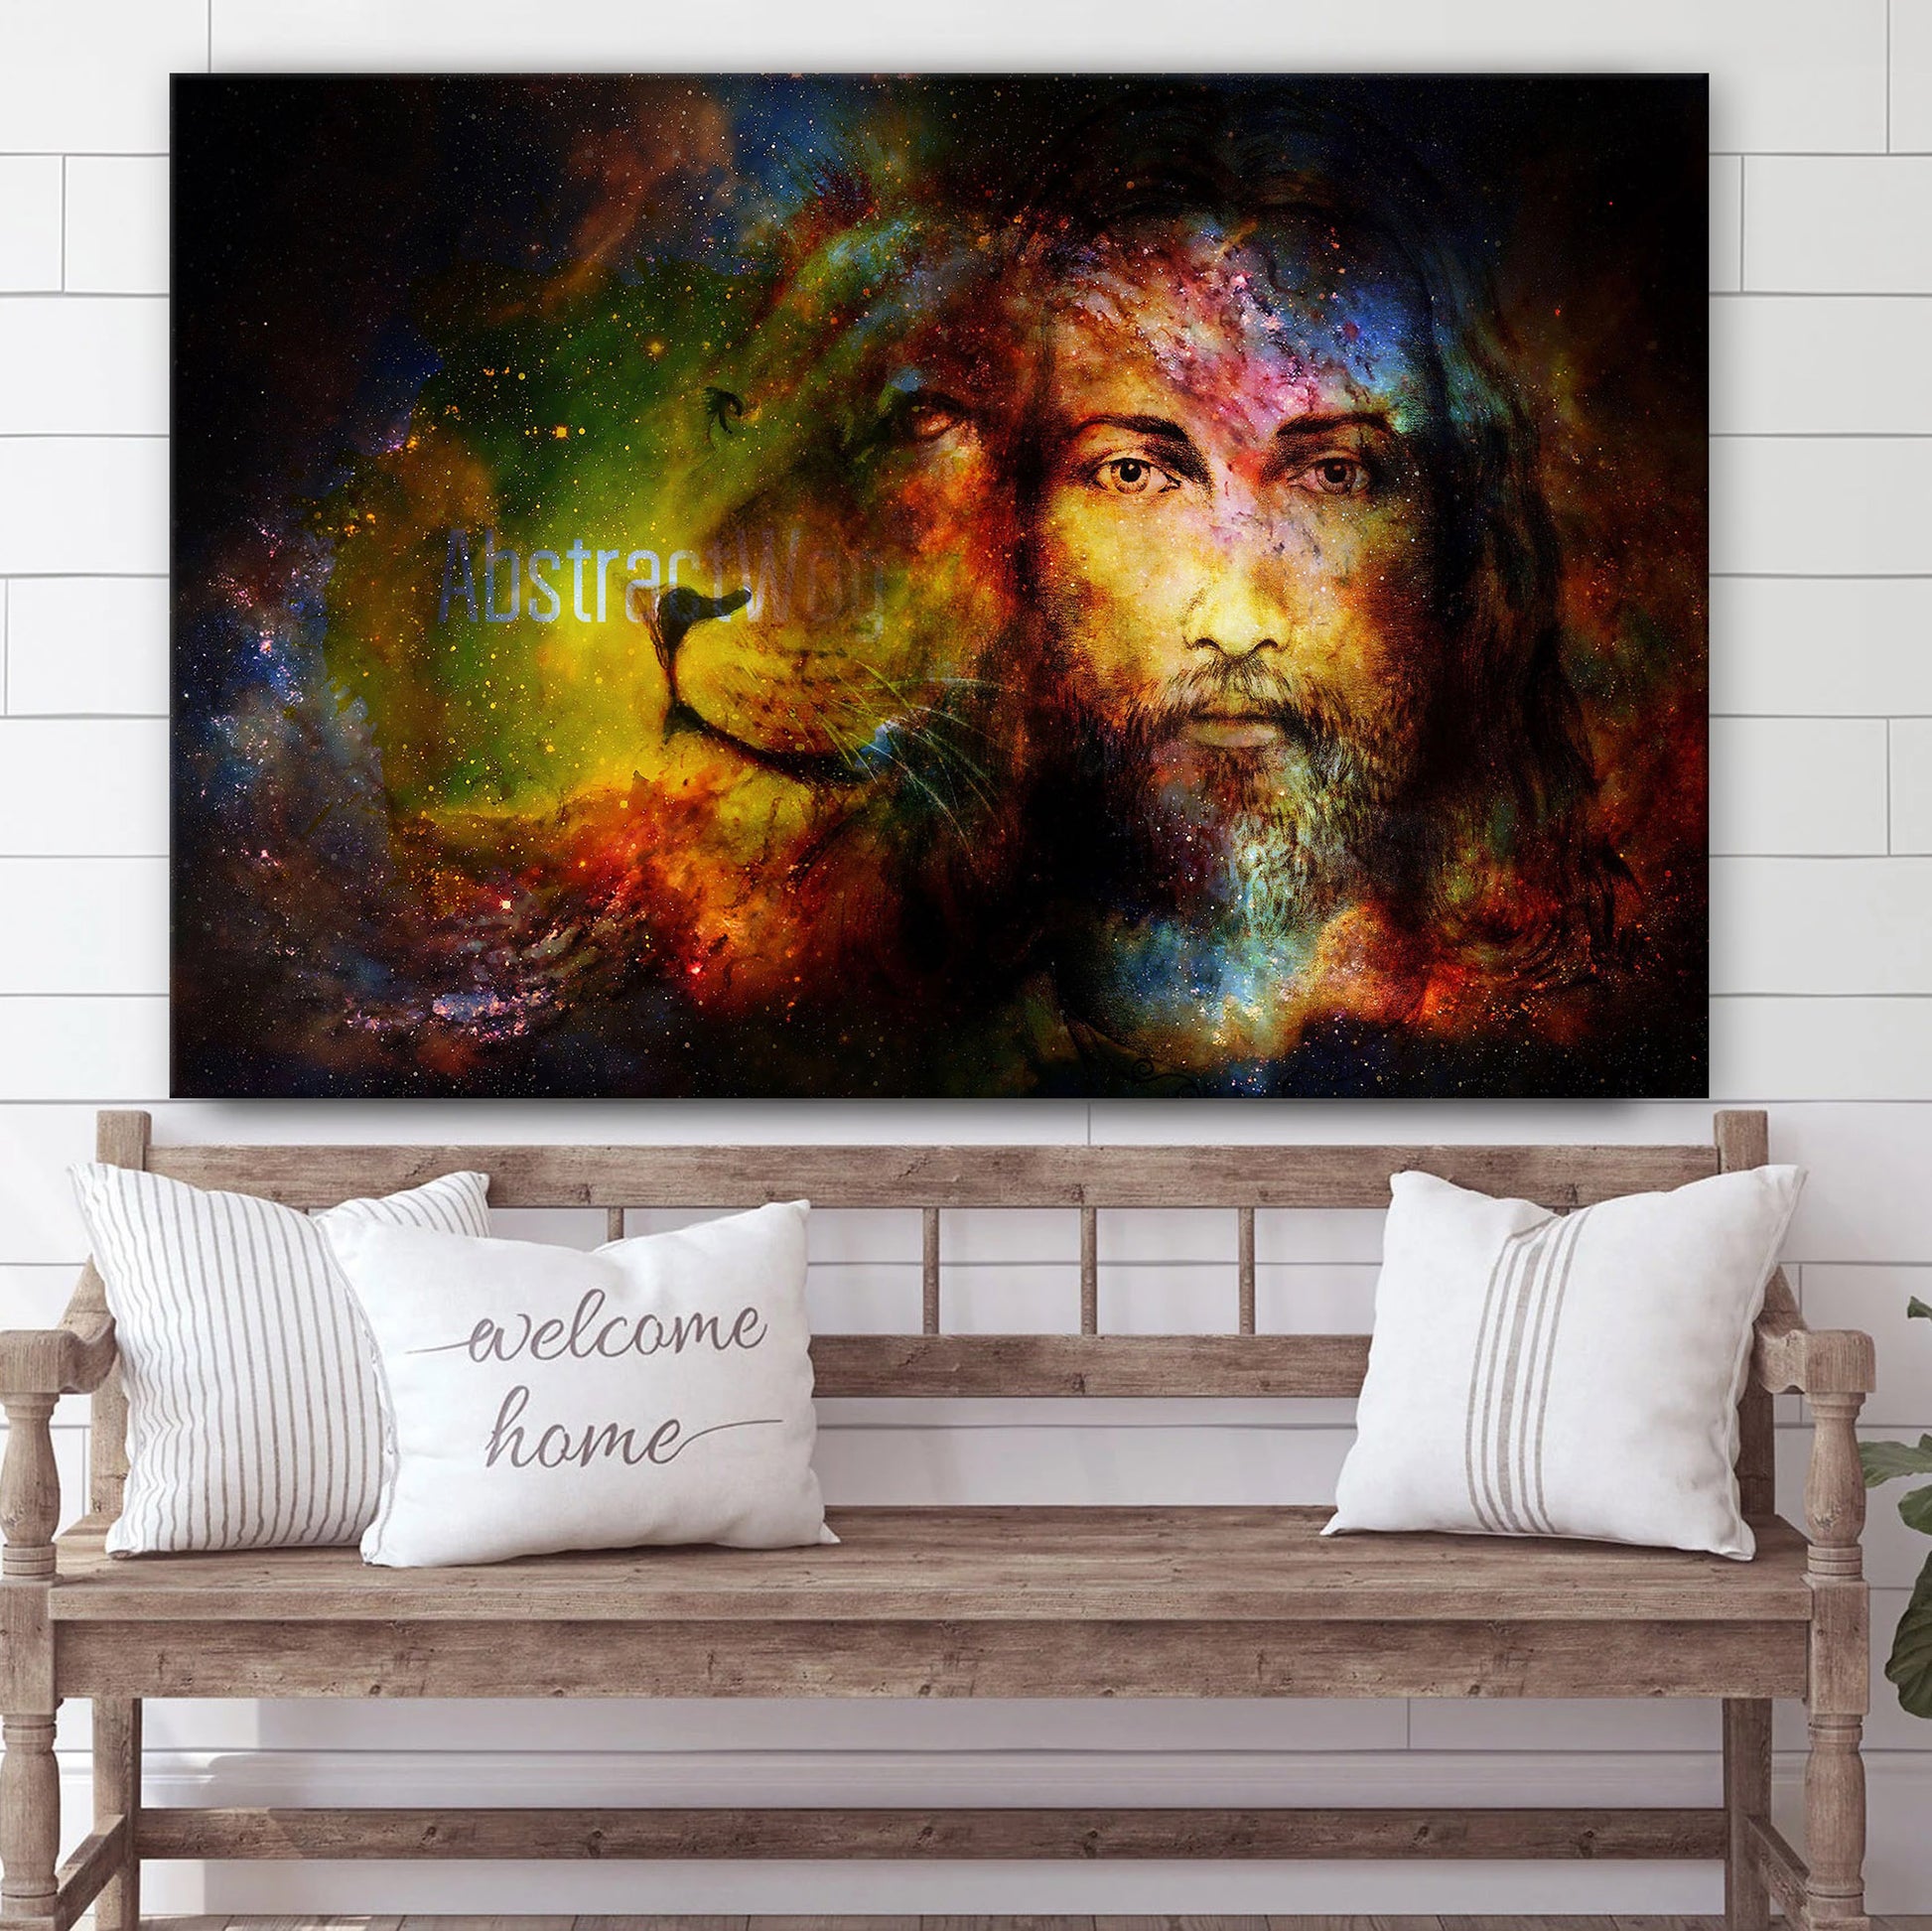 Lion Jesus - Canvas Picture - Jesus Canvas Pictures - Christian Wall Art